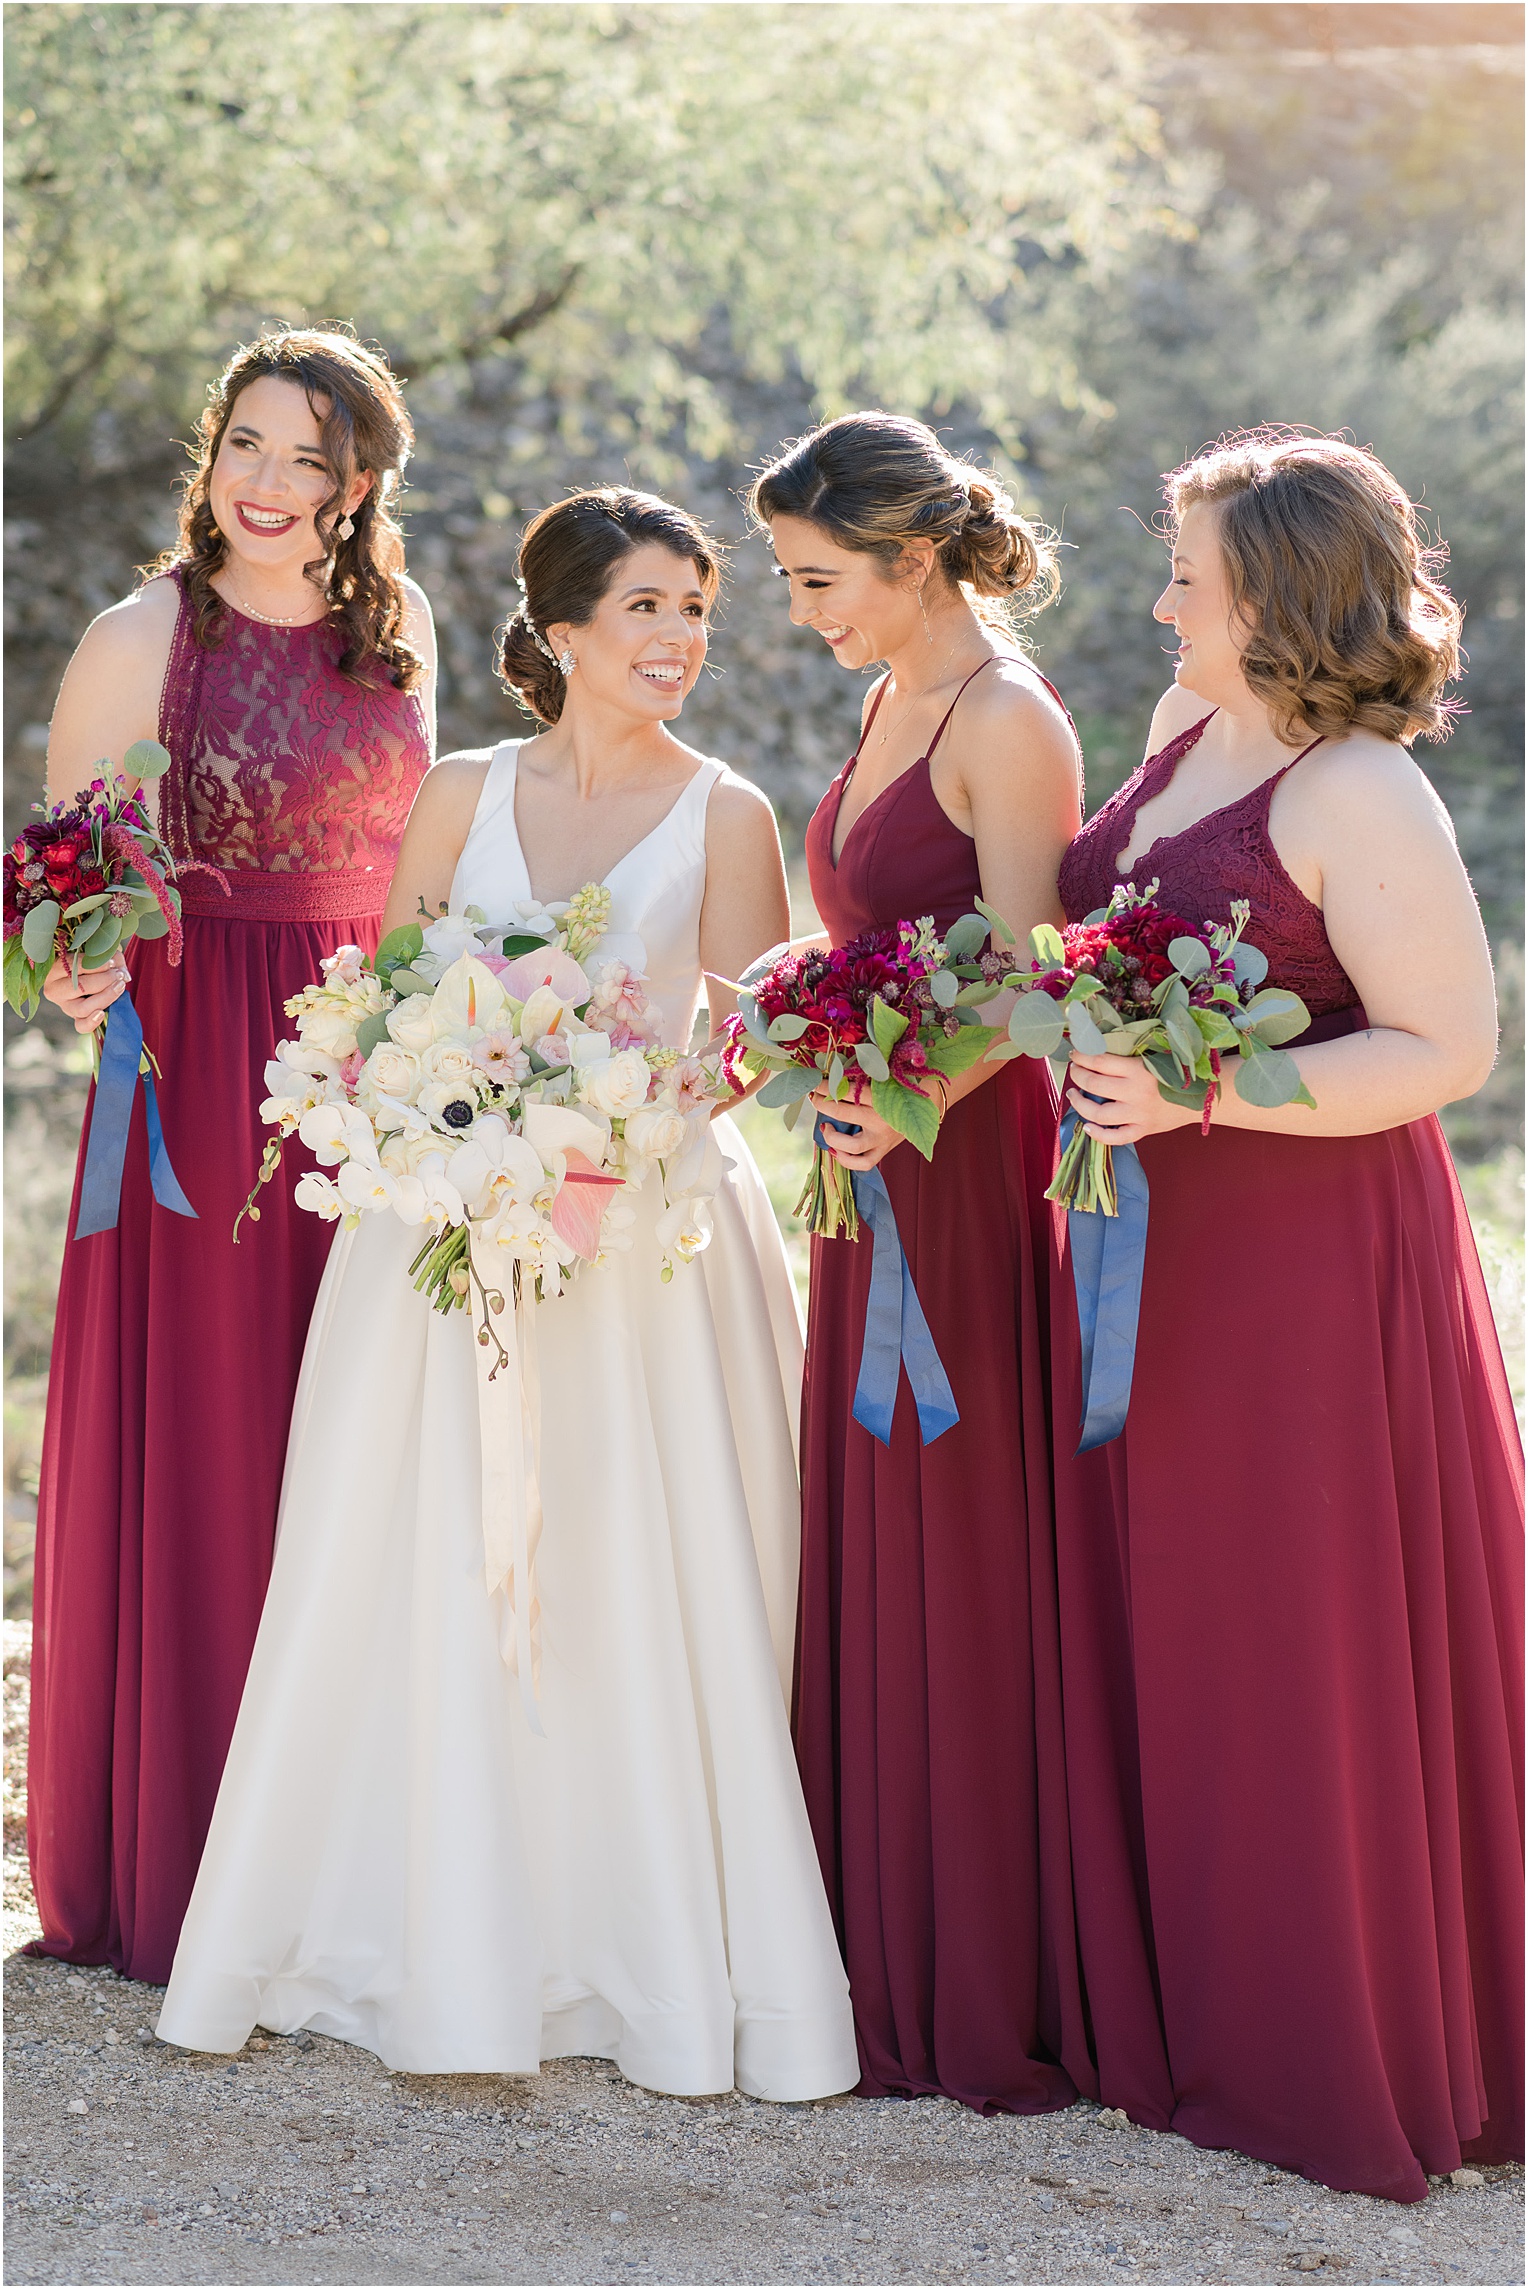 Saguaro Buttes Wedding Tucson, Arizona Farnaz & Brian bridesmaid photos